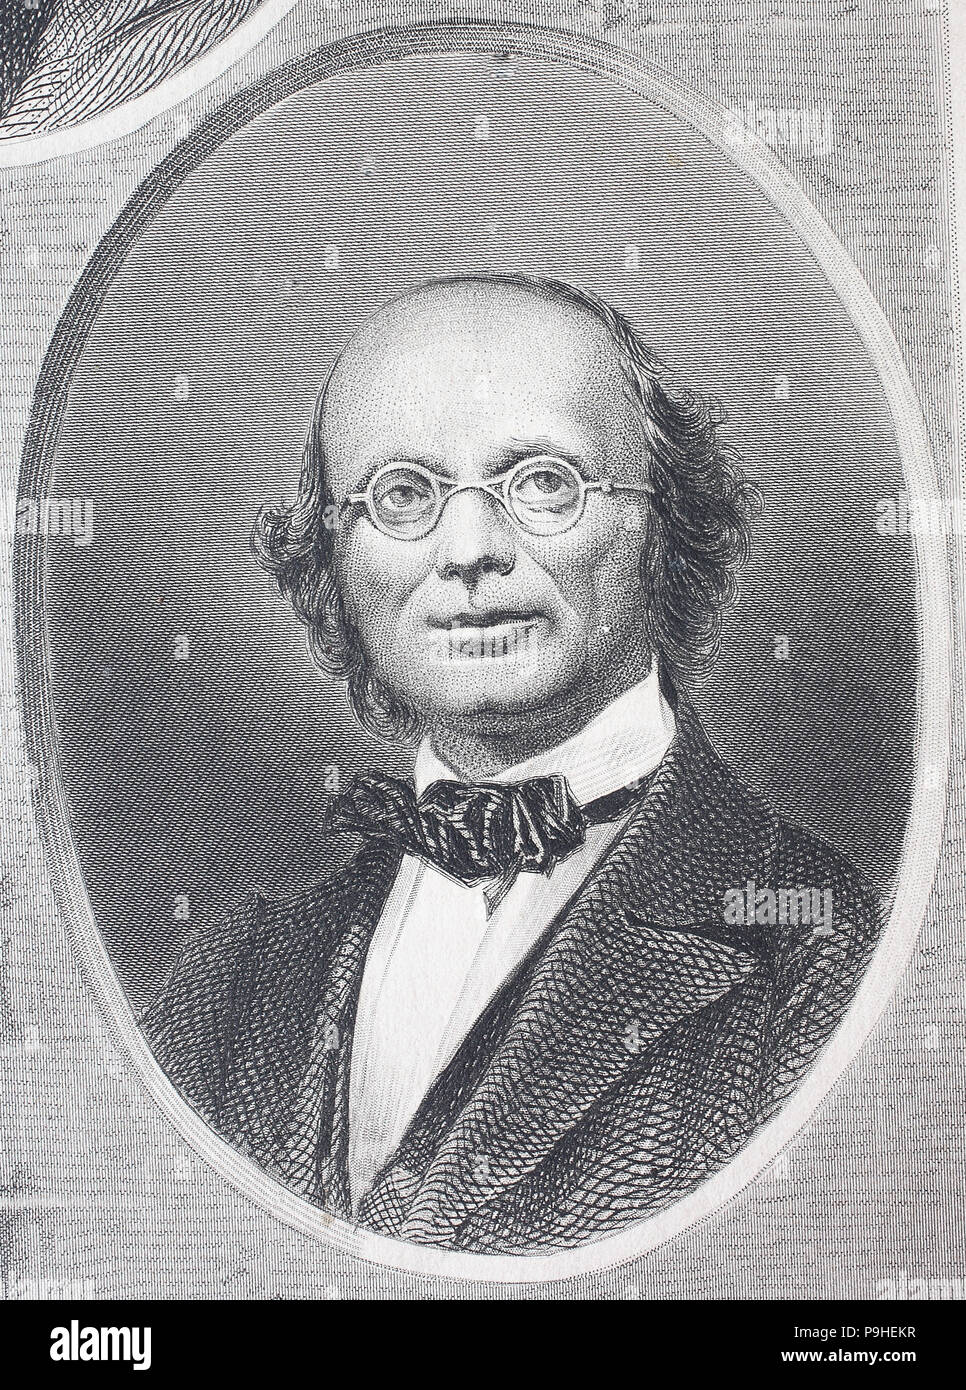 Wilhelm Eduard Weber, 24. Oktober 1804 - 23. Juni 1891, war ein Deutscher Physiker und, zusammen mit Carl Friedrich Gauß, der Erfinder des ersten elektromagnetischen Telegraphen, digital verbesserte Reproduktion eines Holzschnitt Drucken aus dem Jahr 1888 Stockfoto